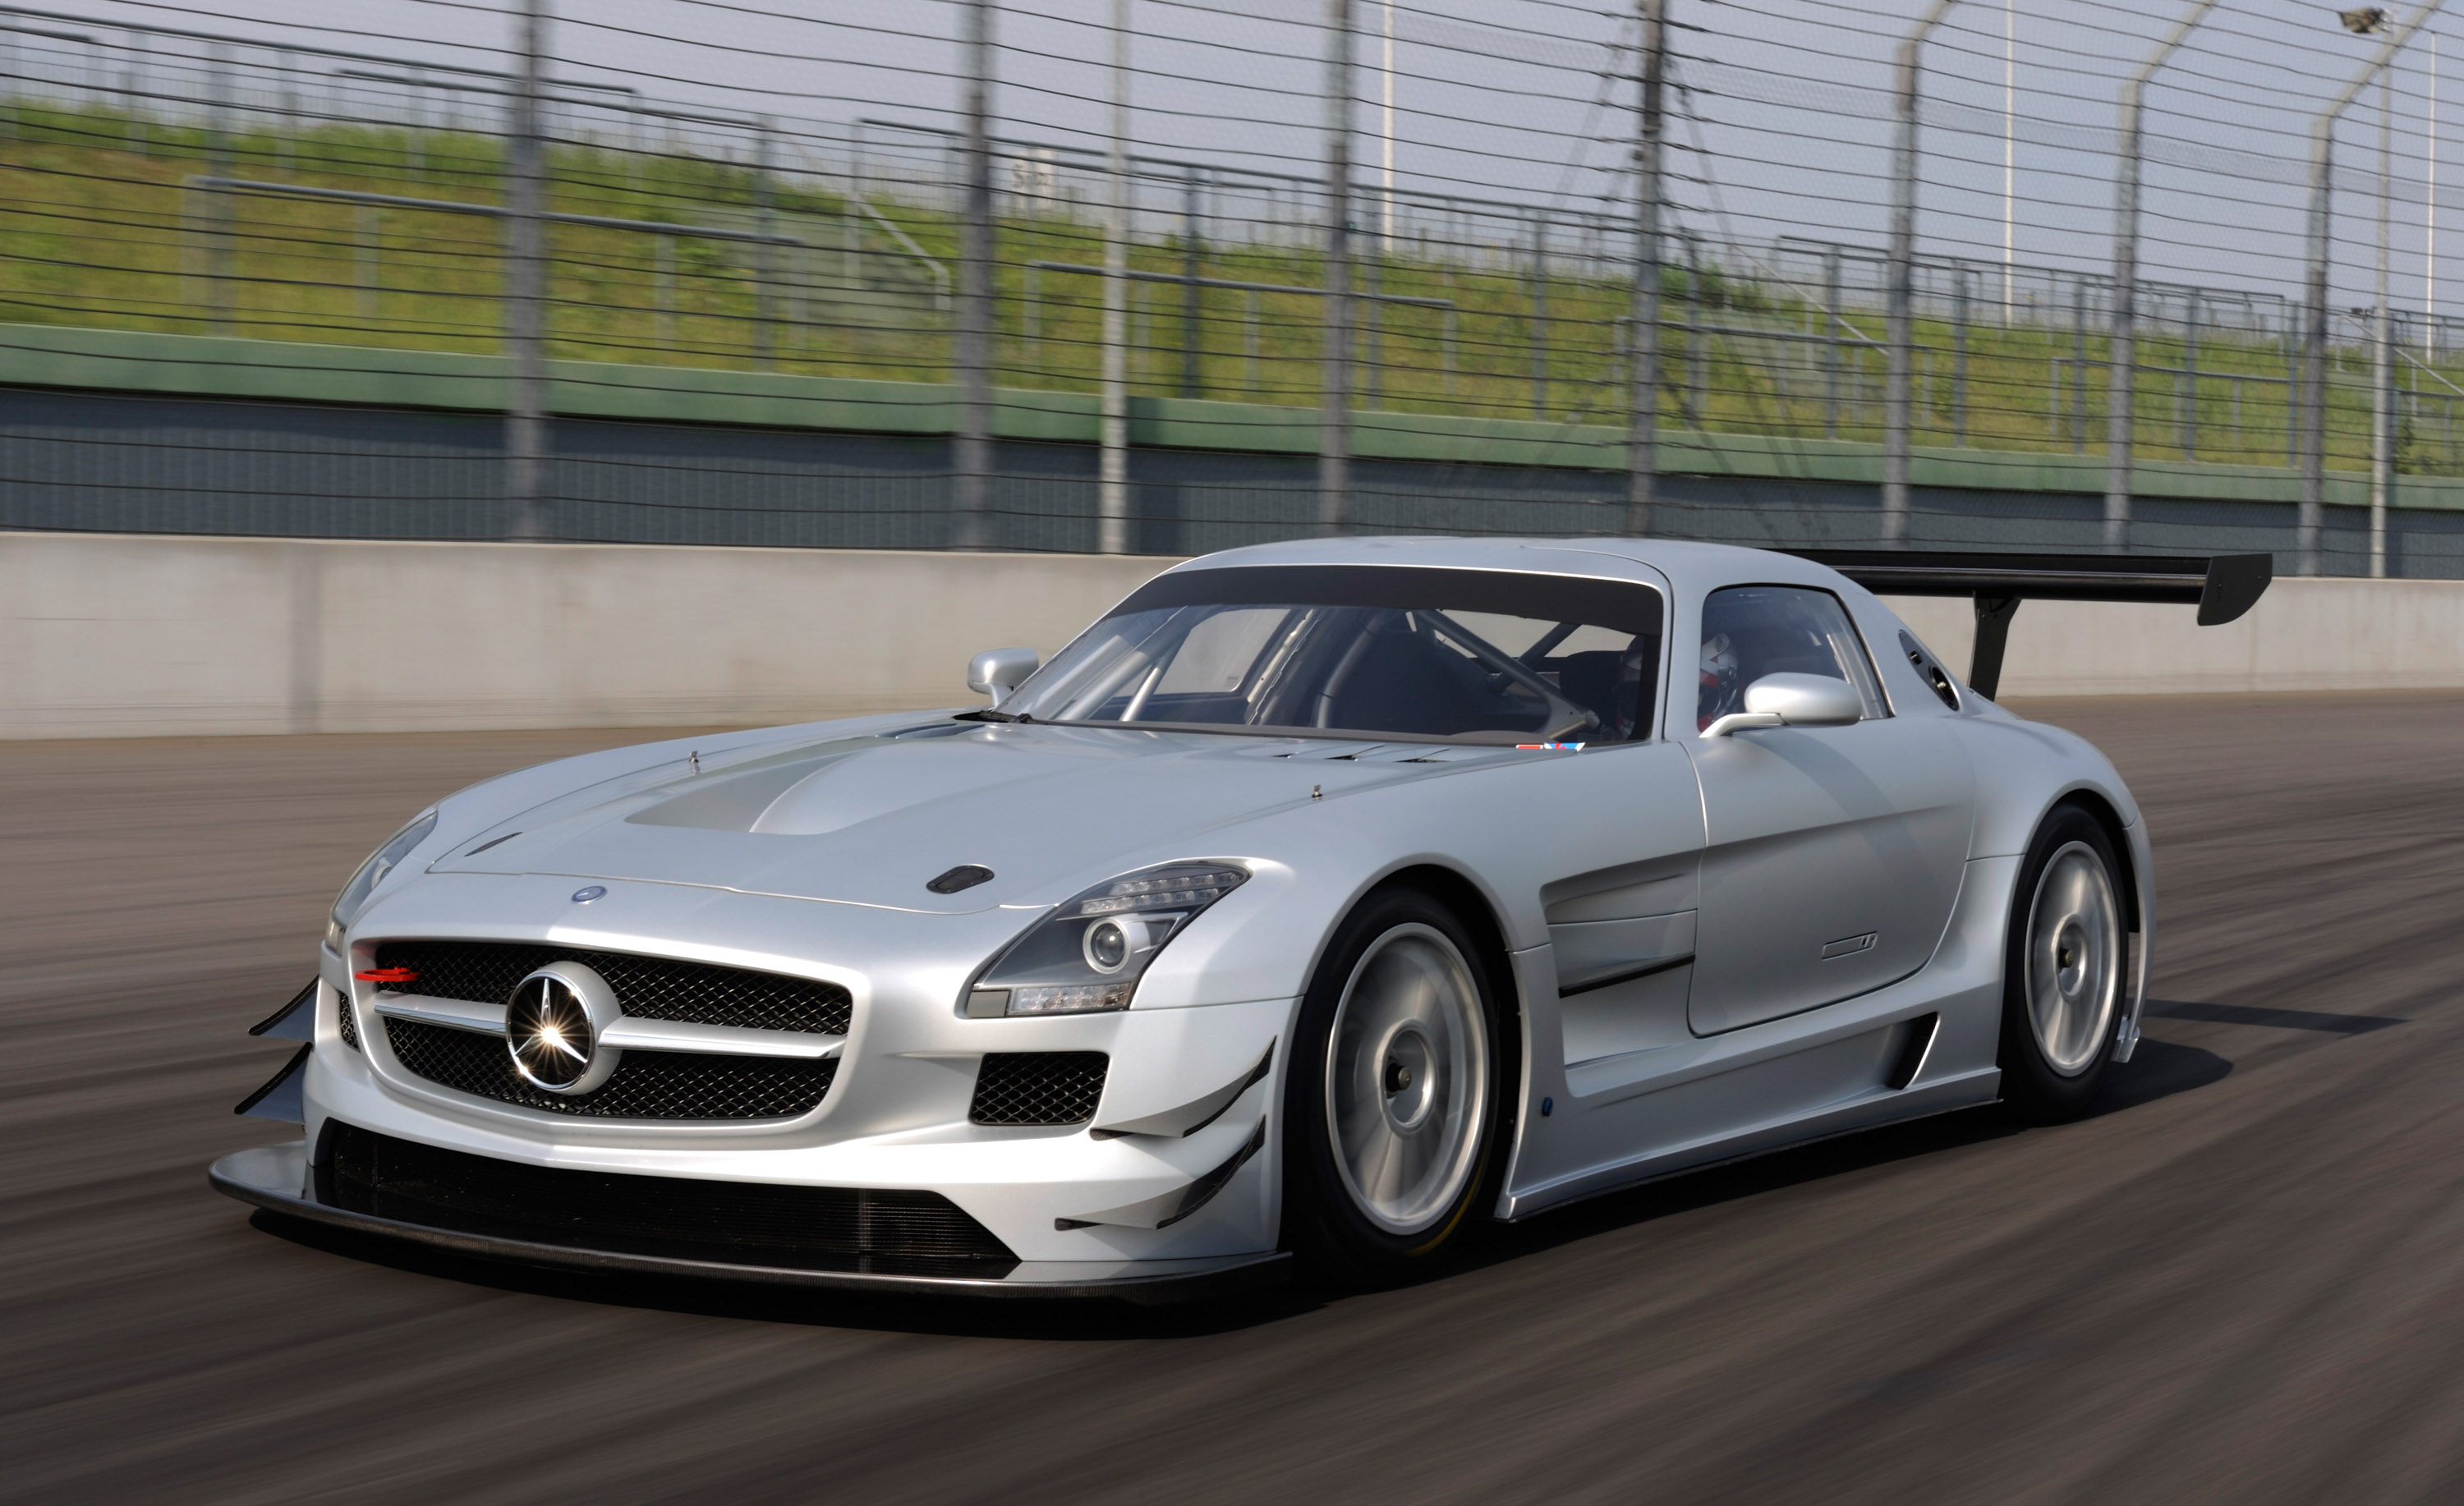 2011, Mercedes, Benz, Sls, Amg, Gt3, Race, Racing, Supercar, Supercars Wallpaper